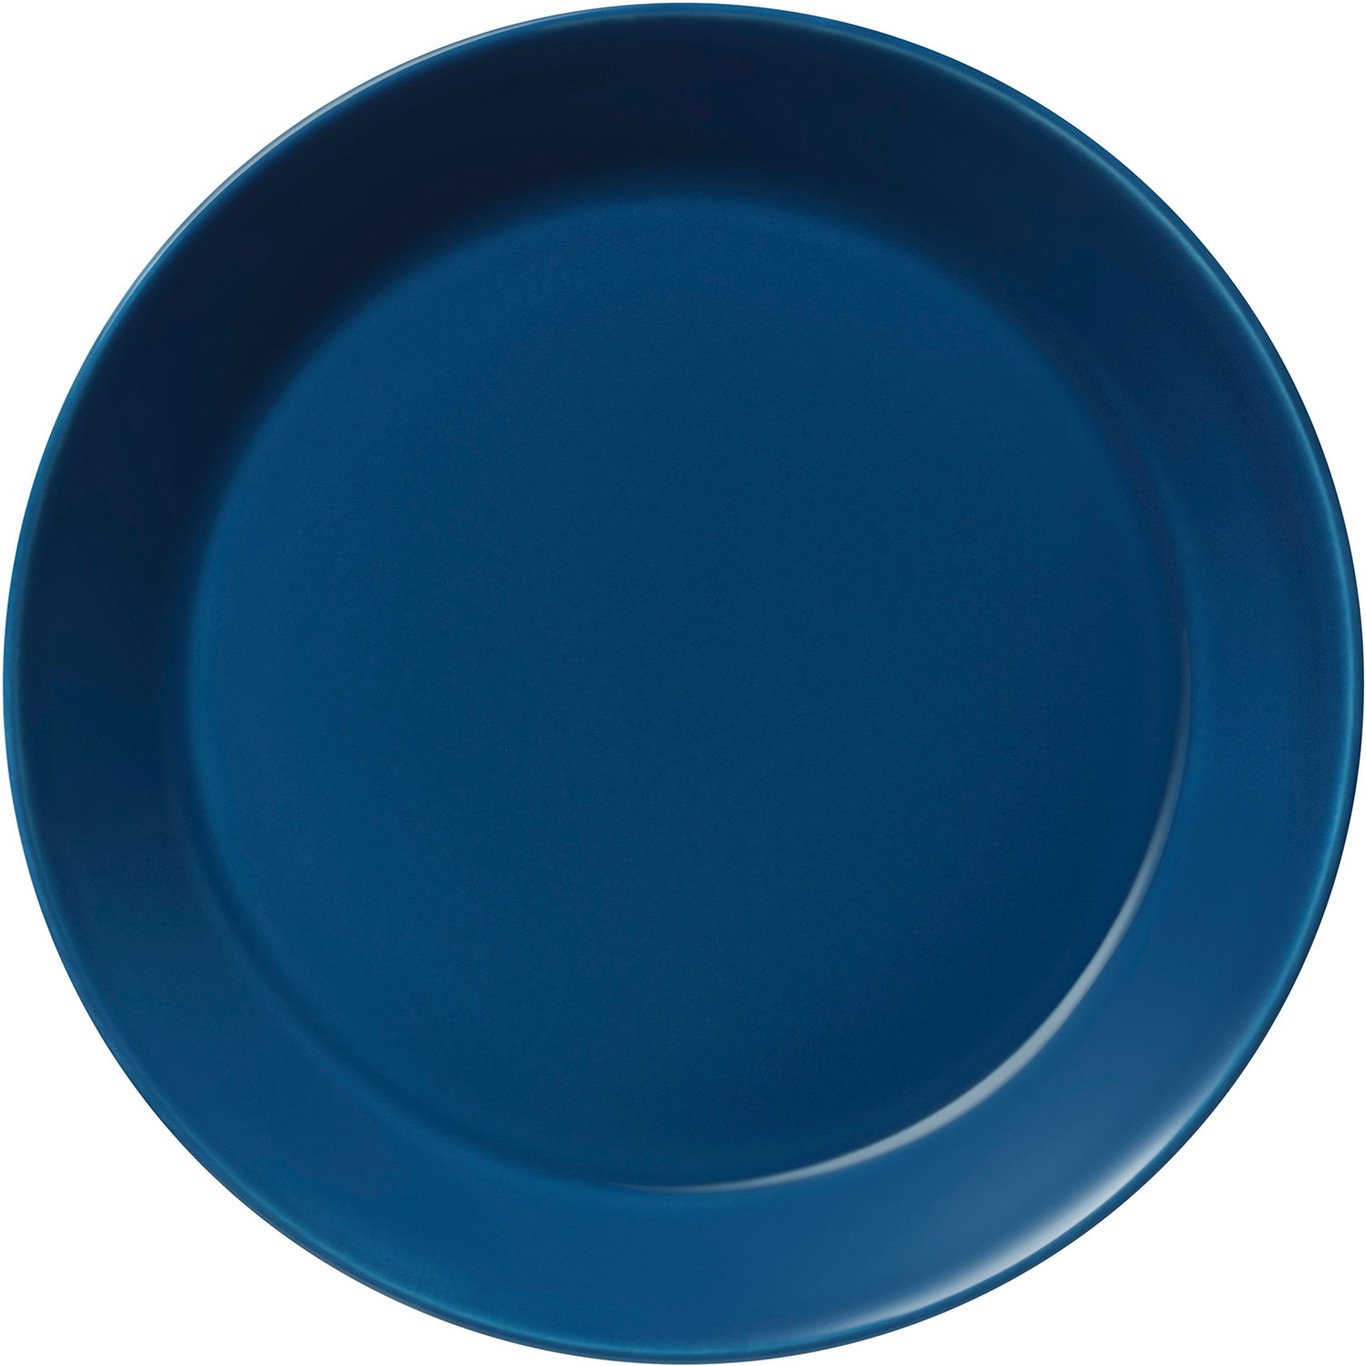 Teema Bord 21 cm, Vintage Blue